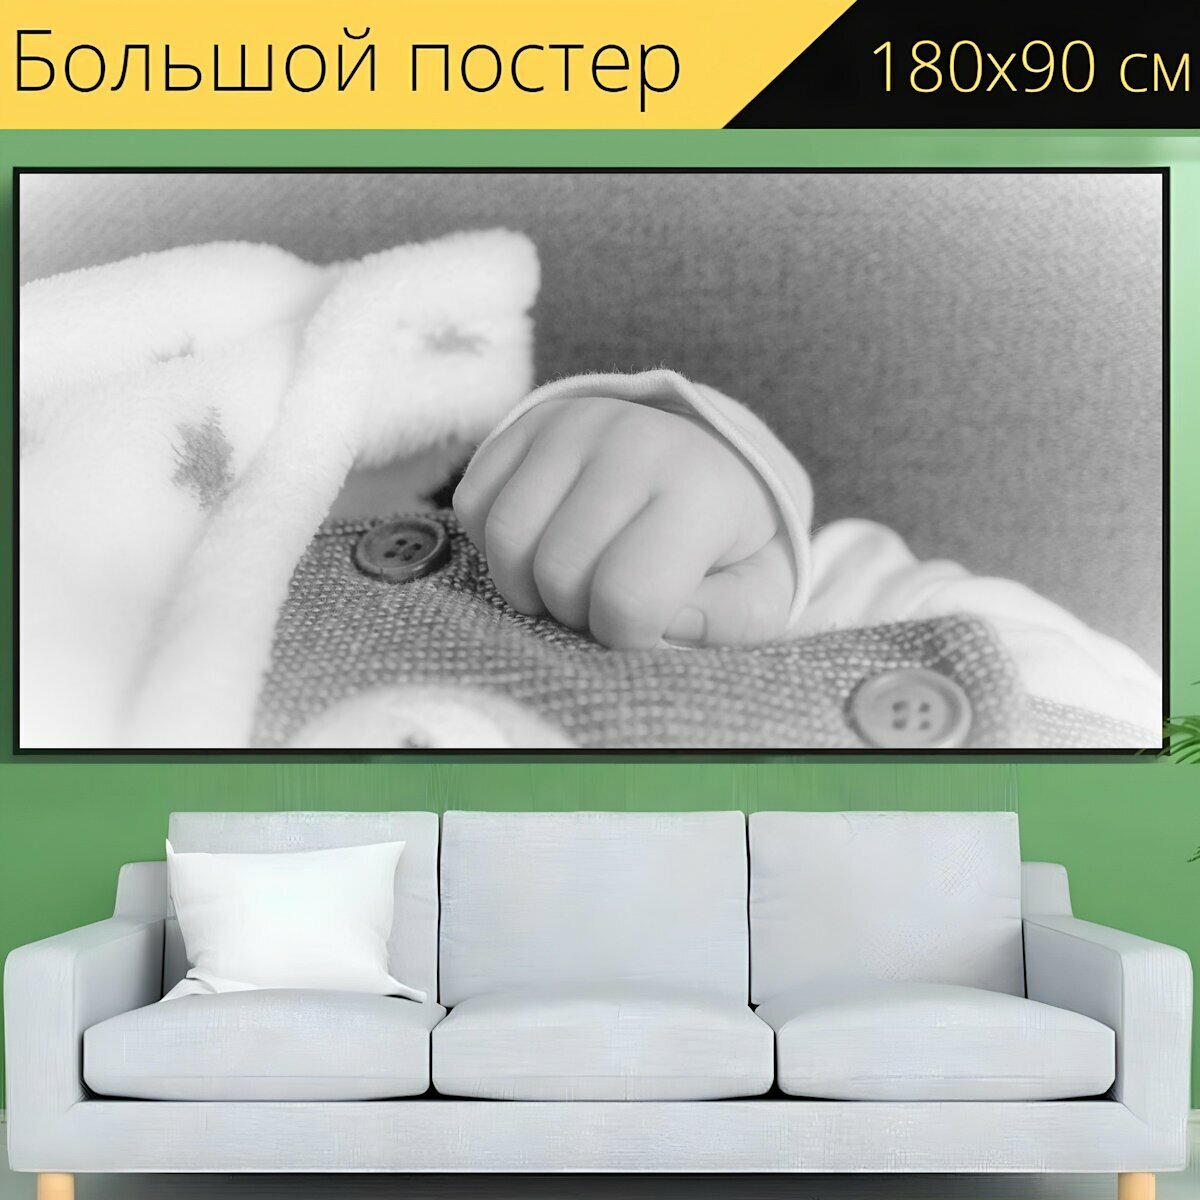 Большой постер "Младенец, новорожденный, ребенок" 180 x 90 см. для интерьера